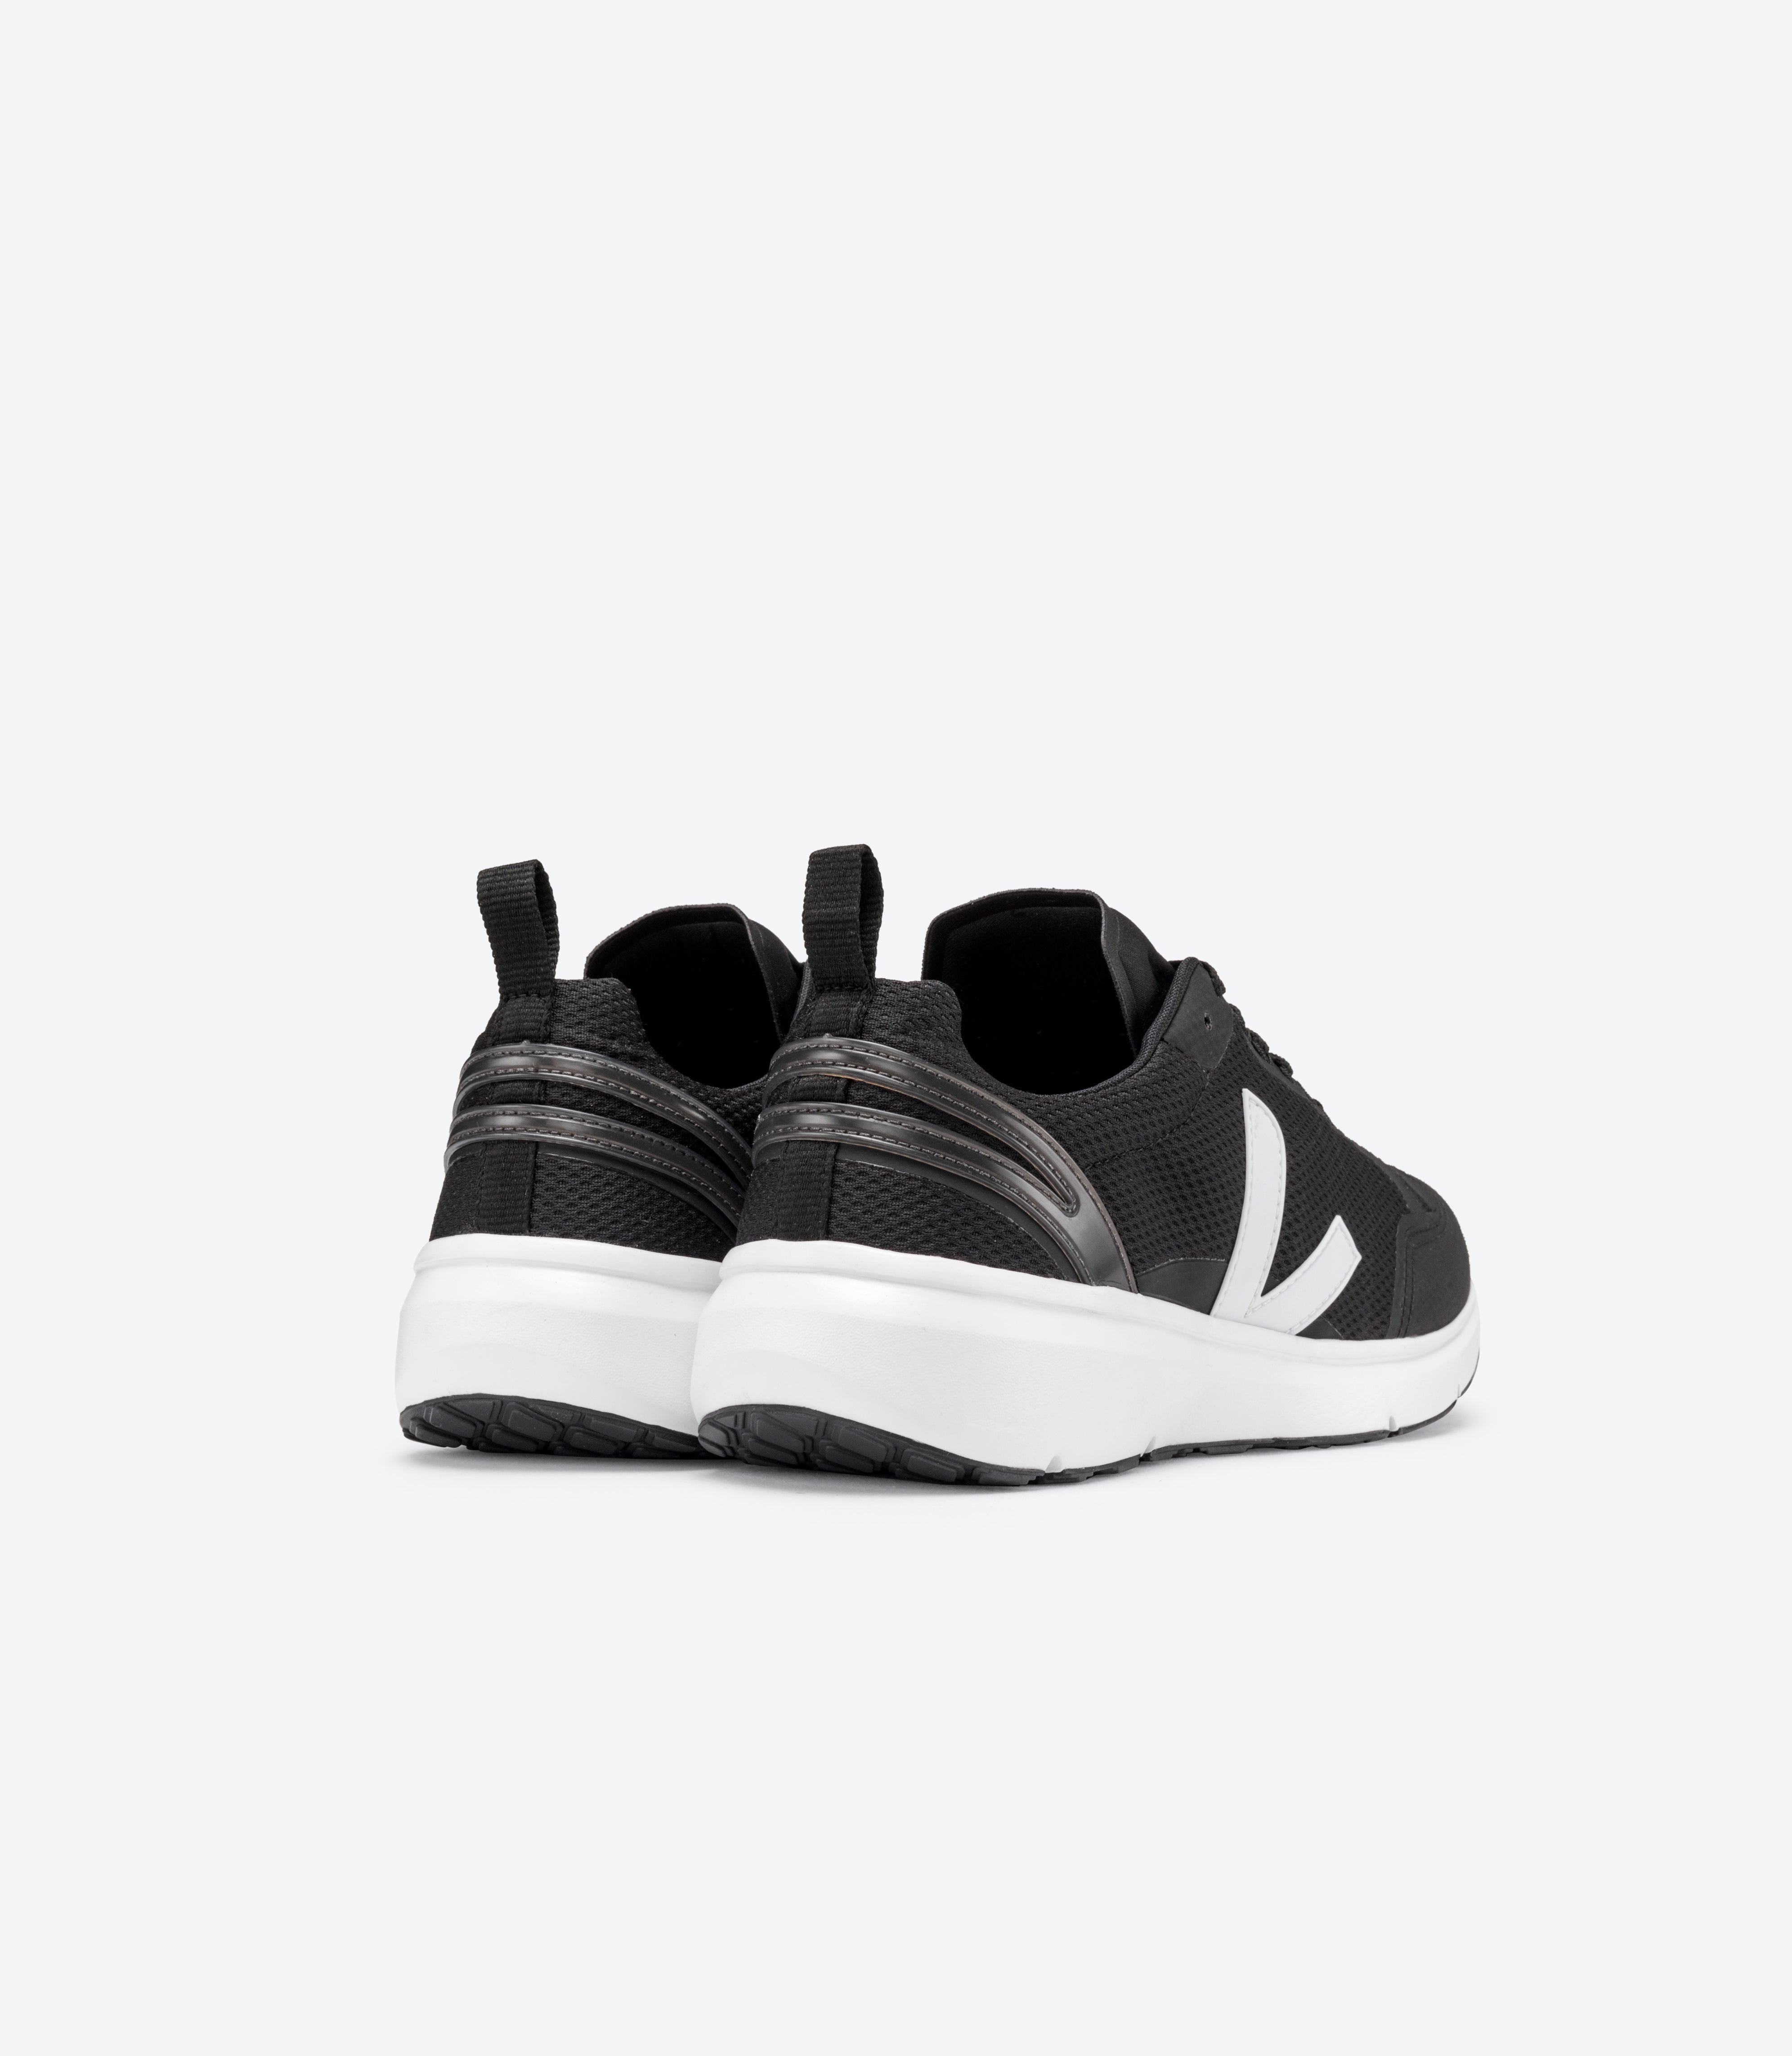 Condor 2 Men's Running Sneakers - Black